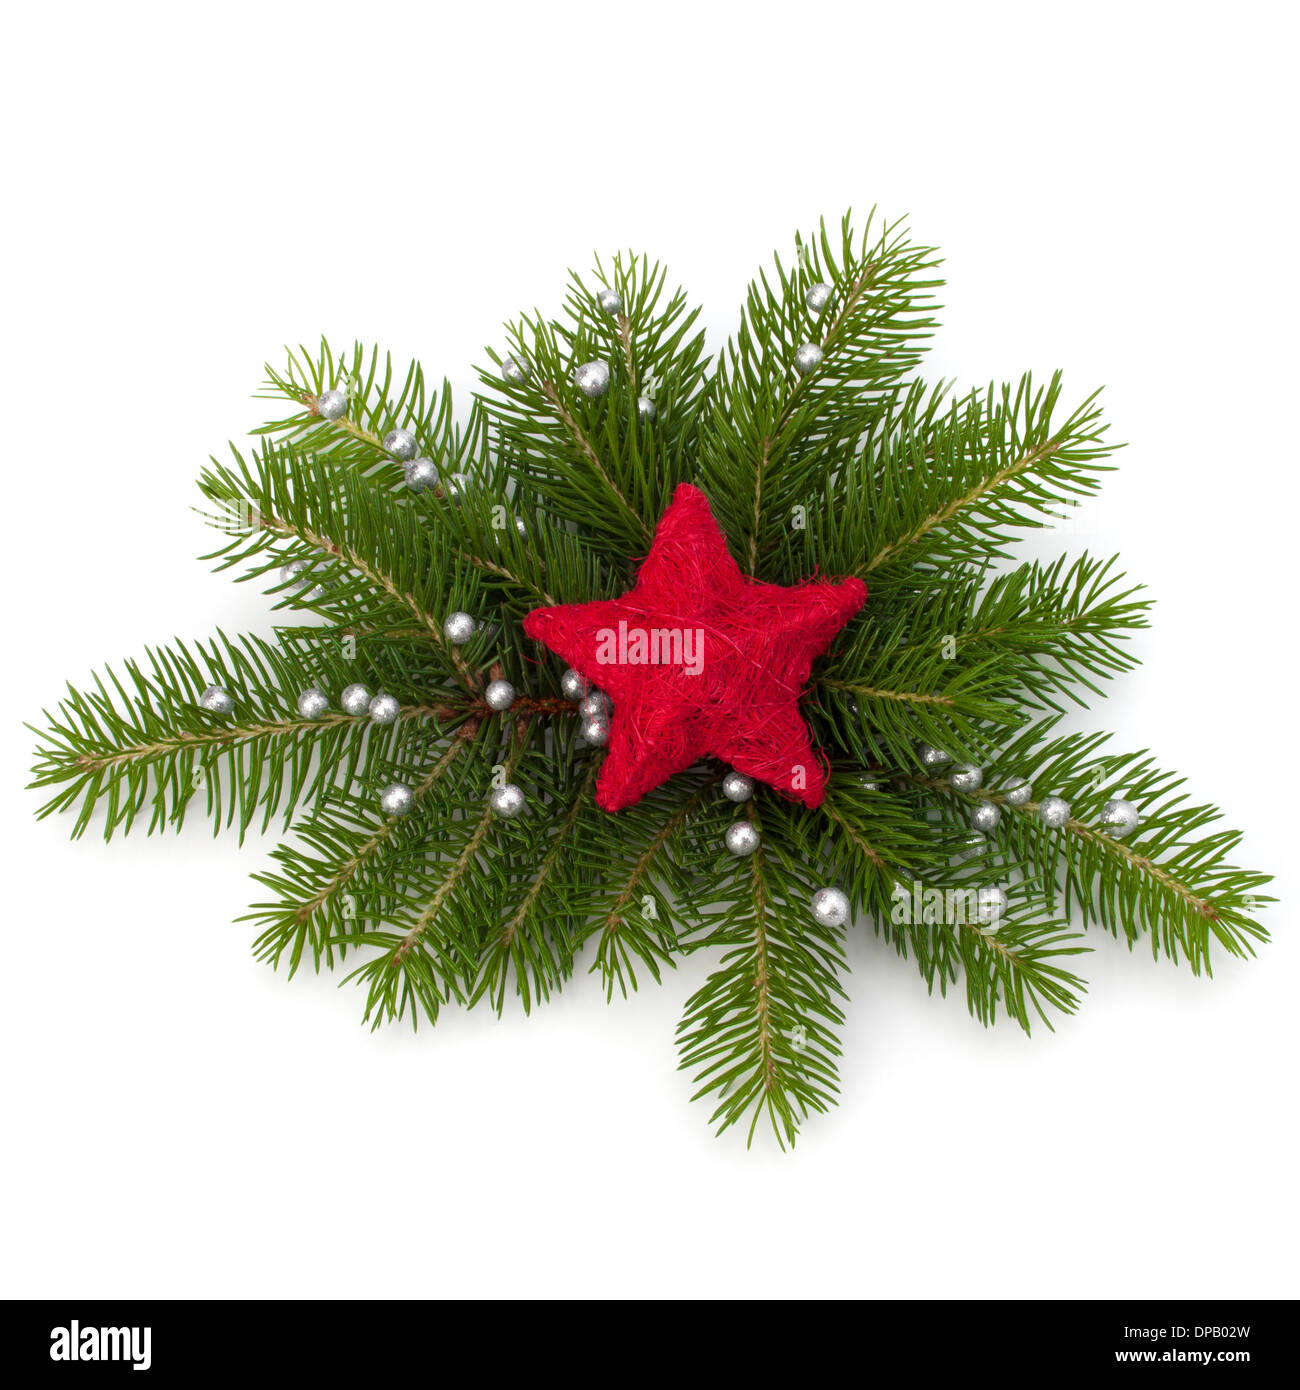 Christmas decoration isolated on white background Stock Photo